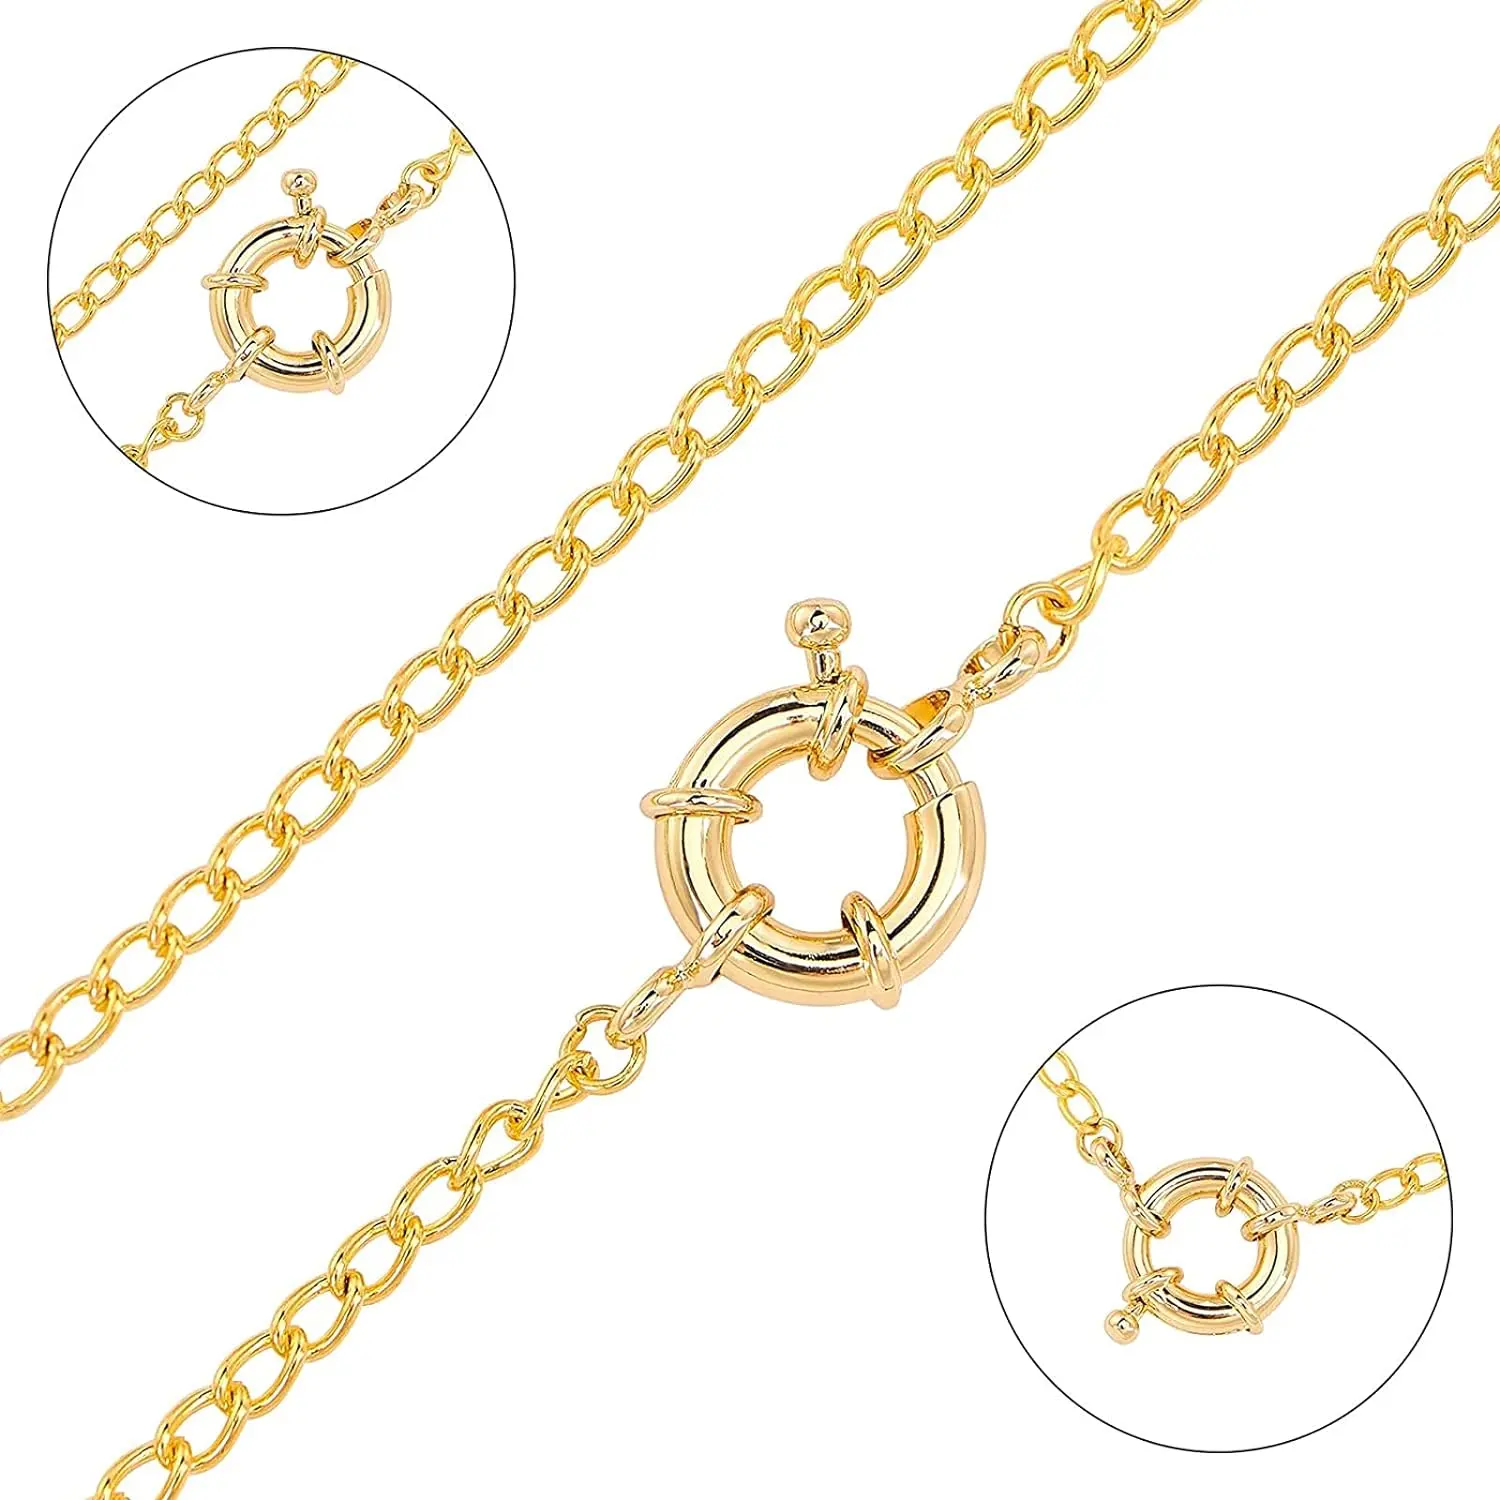 Adatto per collane, bracciali, gioielli, fibbie ad anello chiuso, connettori con fibbia a superficie liscia fermagli a molla dorati